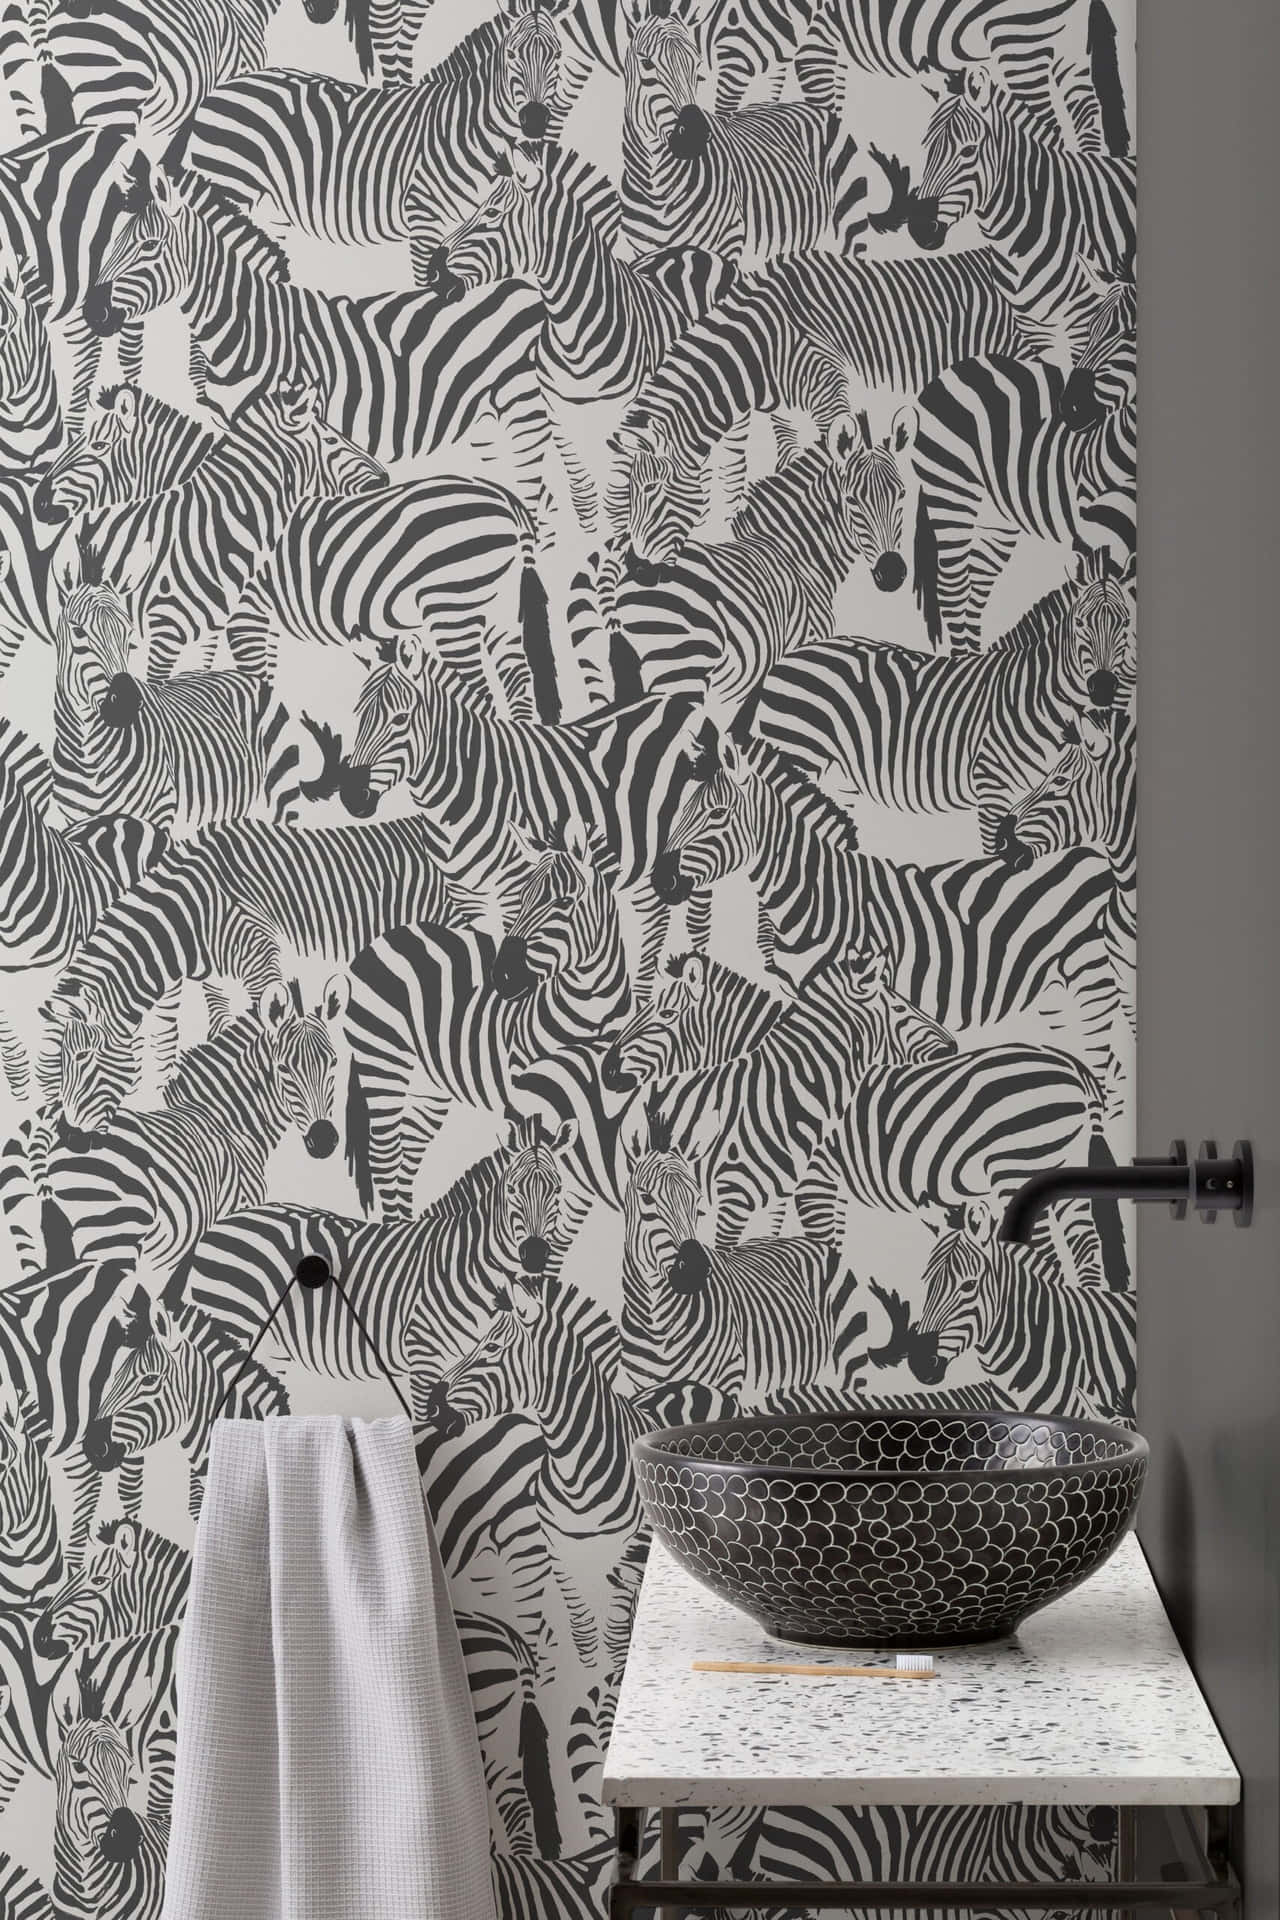 Et badeværelse med zebra tapet og et håndvask. Wallpaper